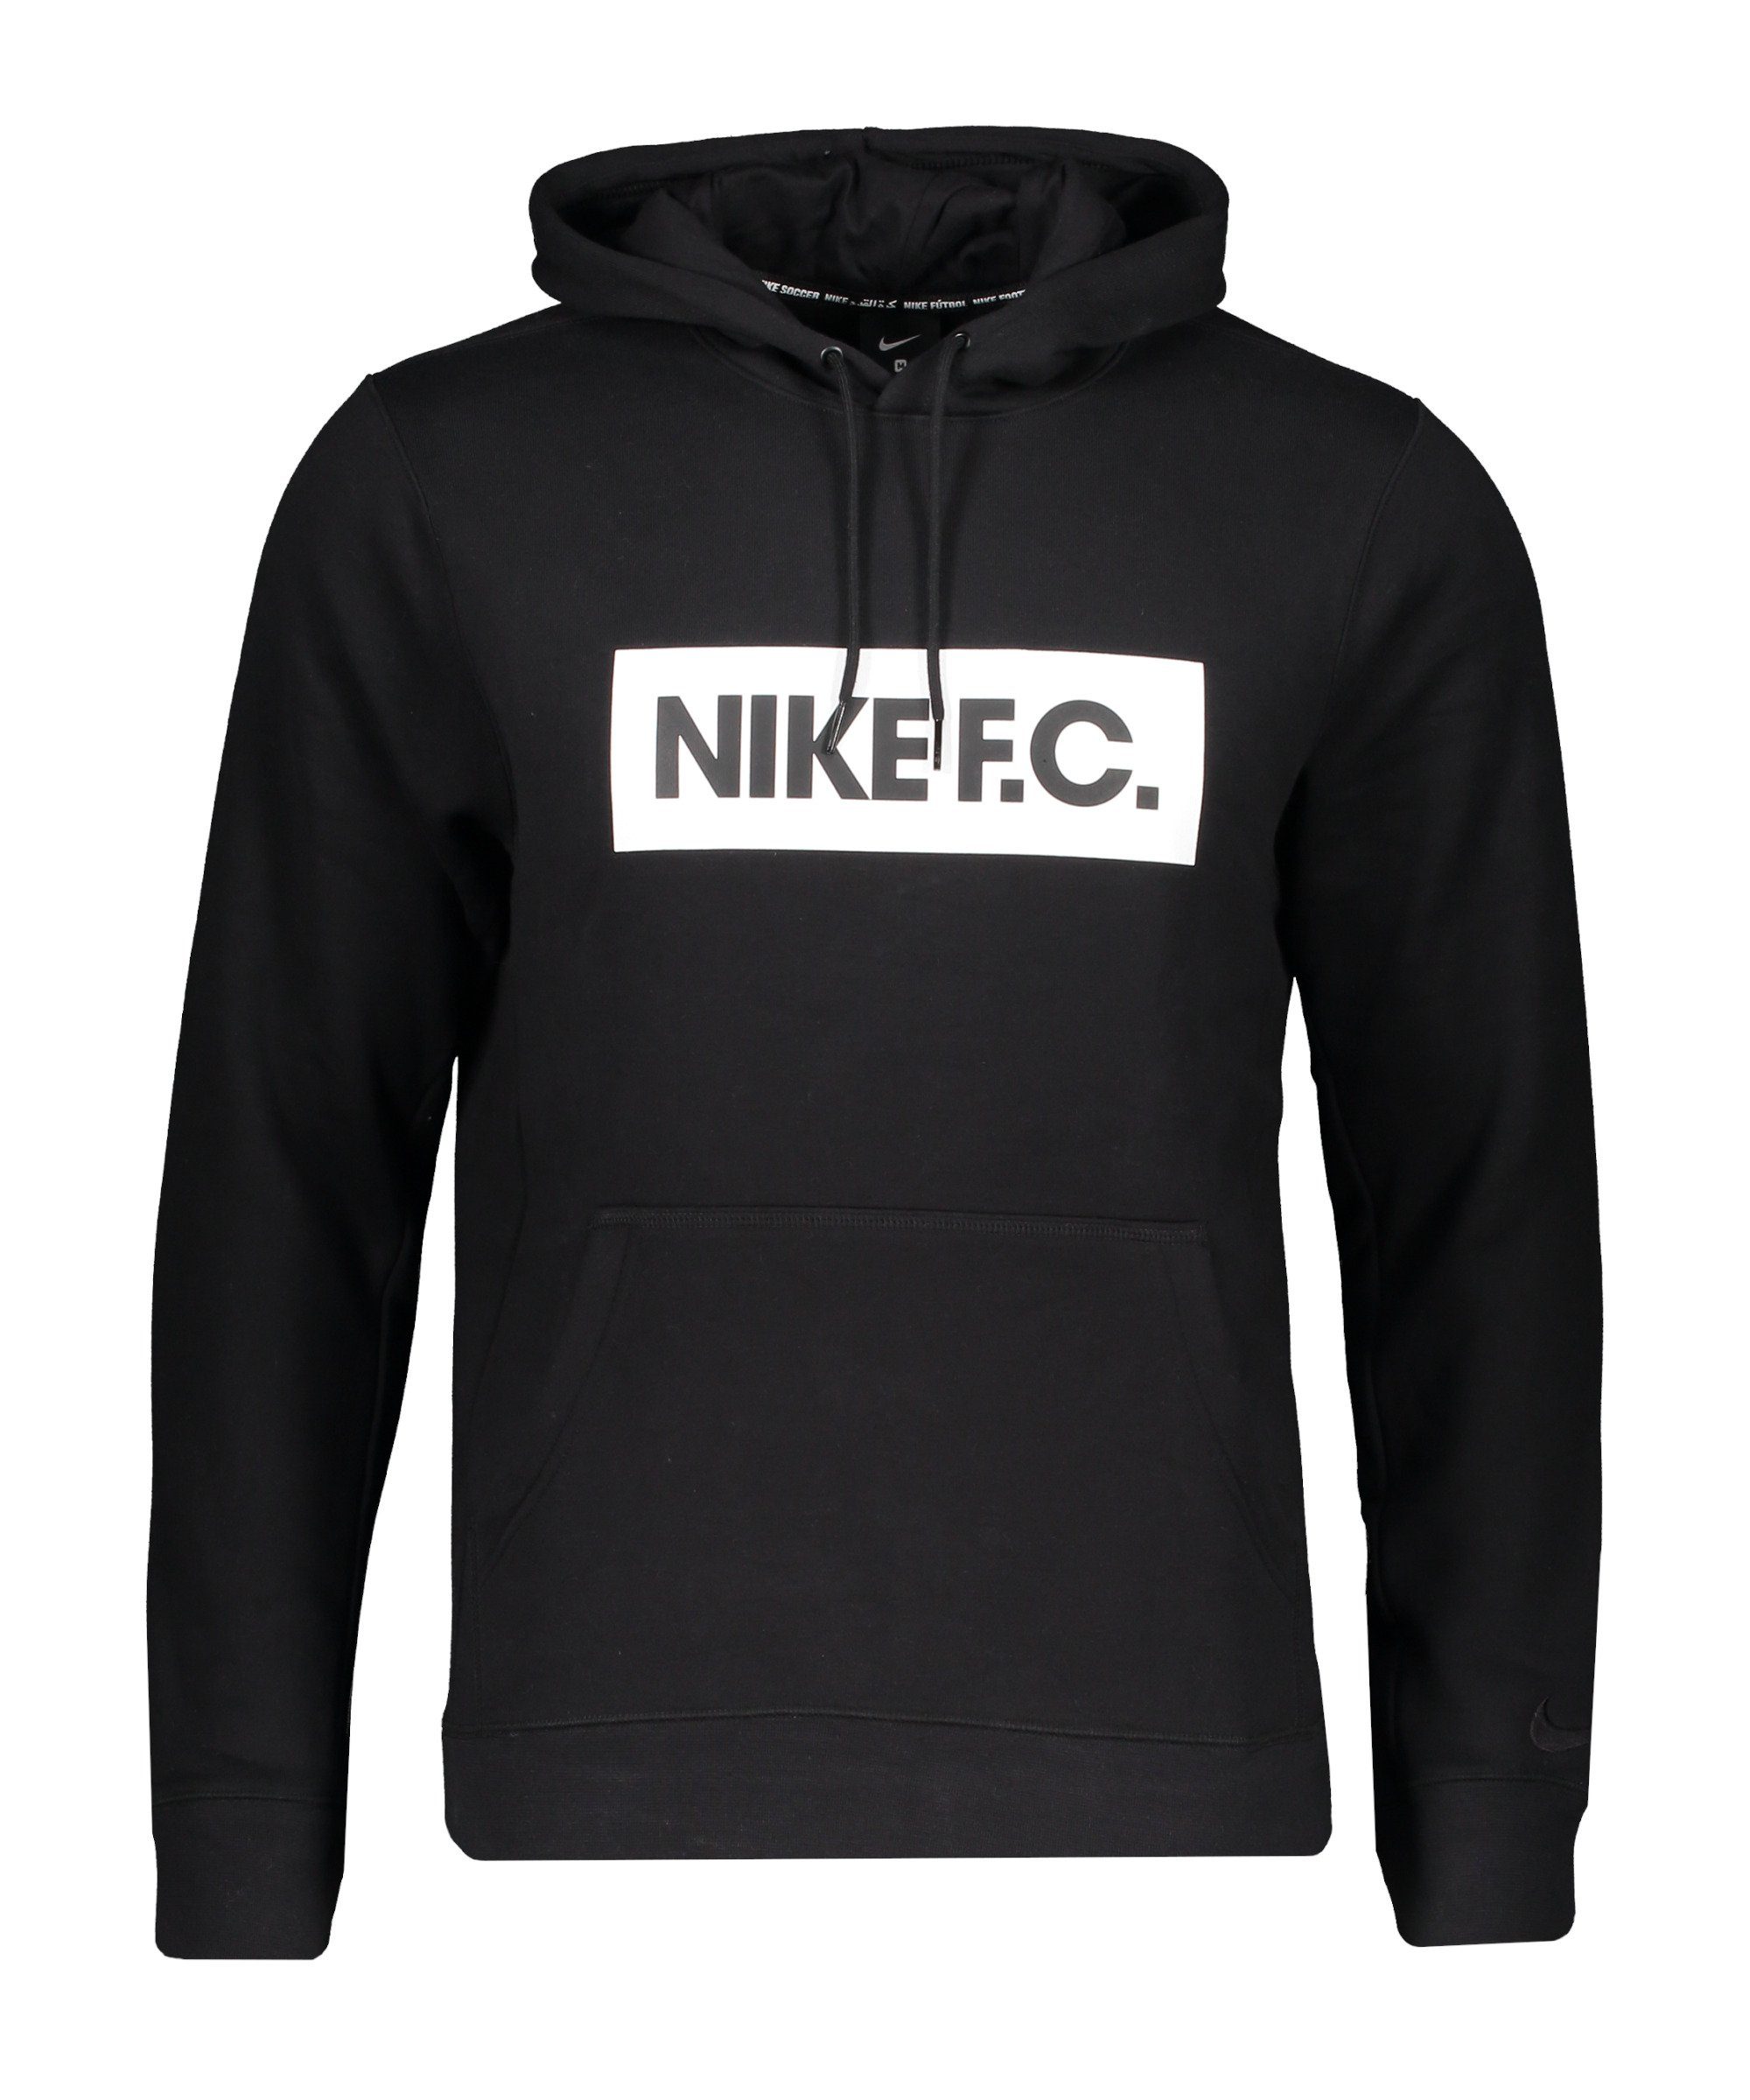 Hoody schwarz Fleece Sportswear F.C. Sweatshirt Nike